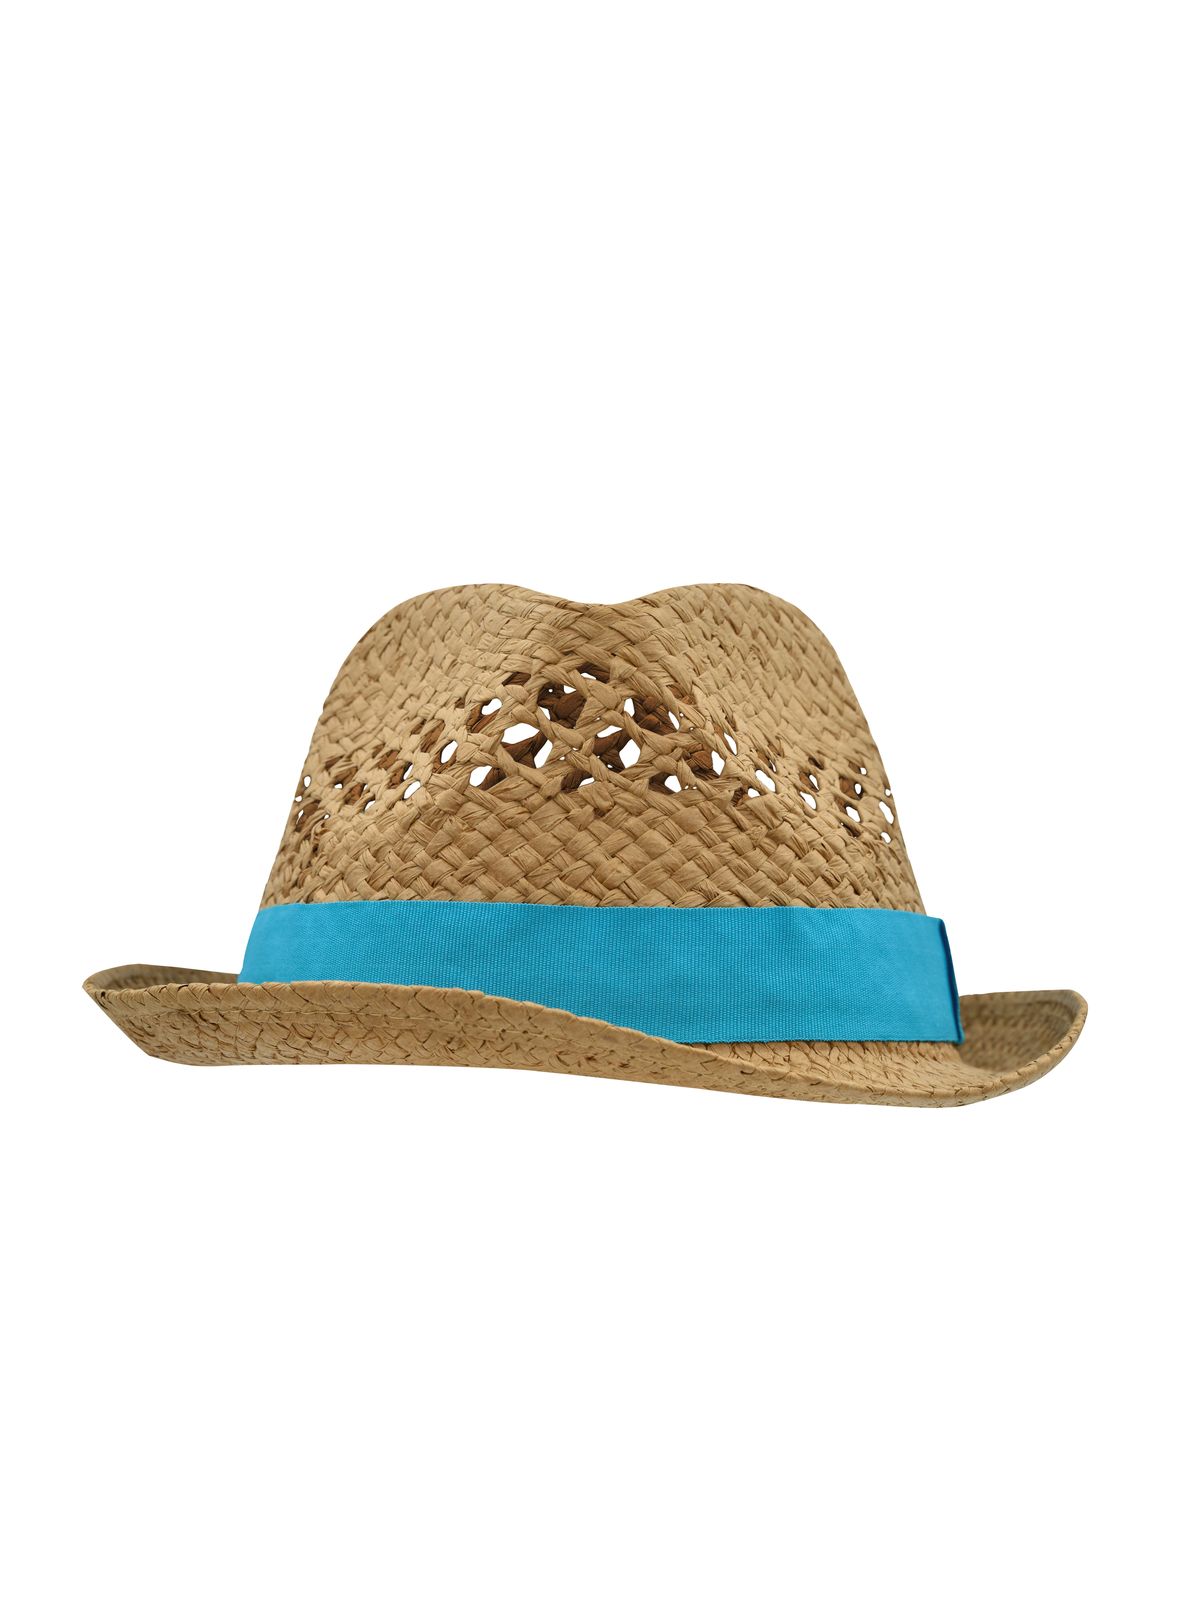 summer-style-hat-caramel-turquoise.webp